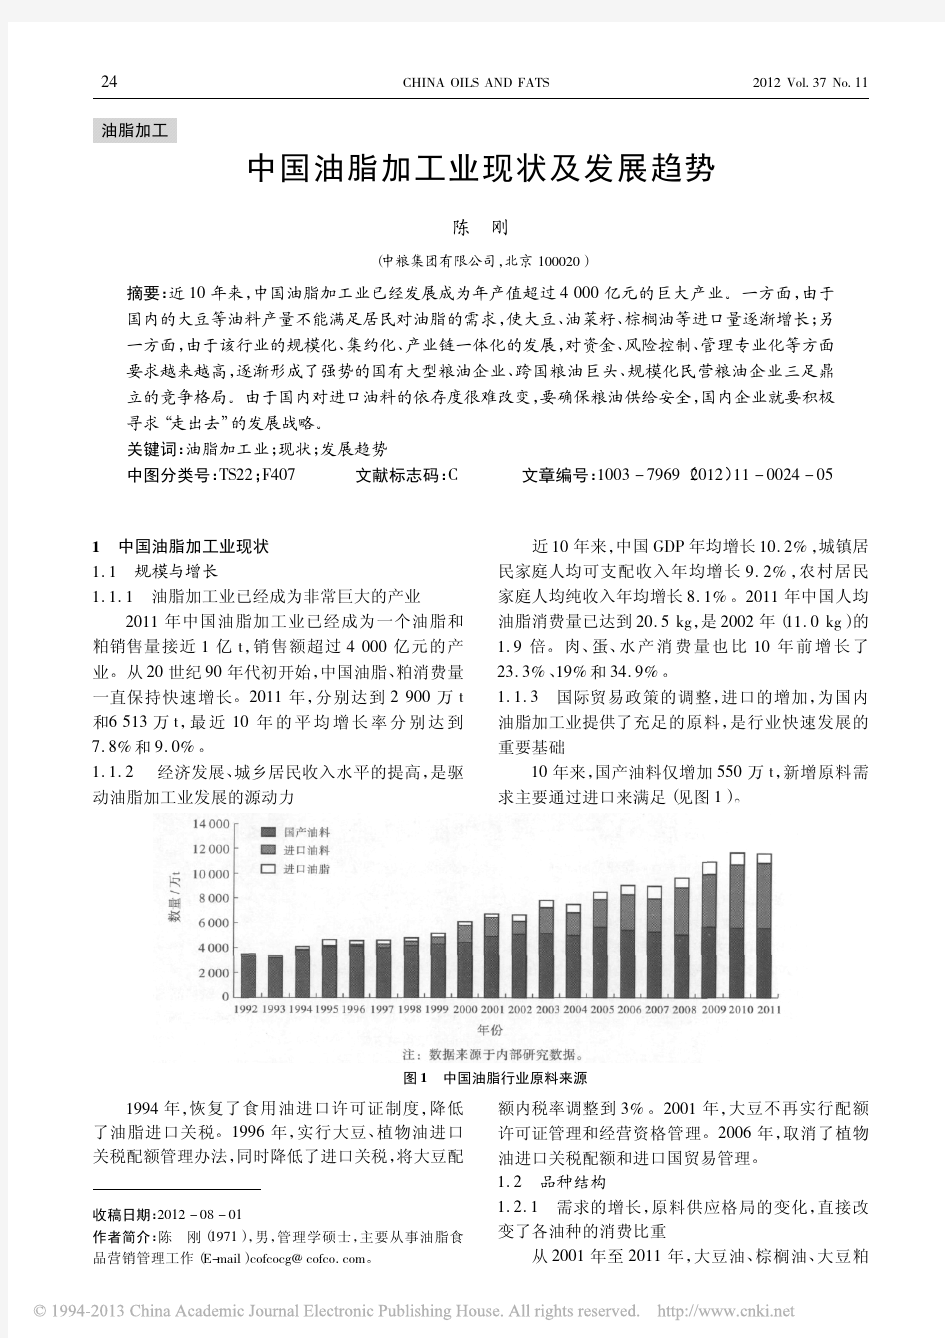 中国油脂加工业现状及发展趋势